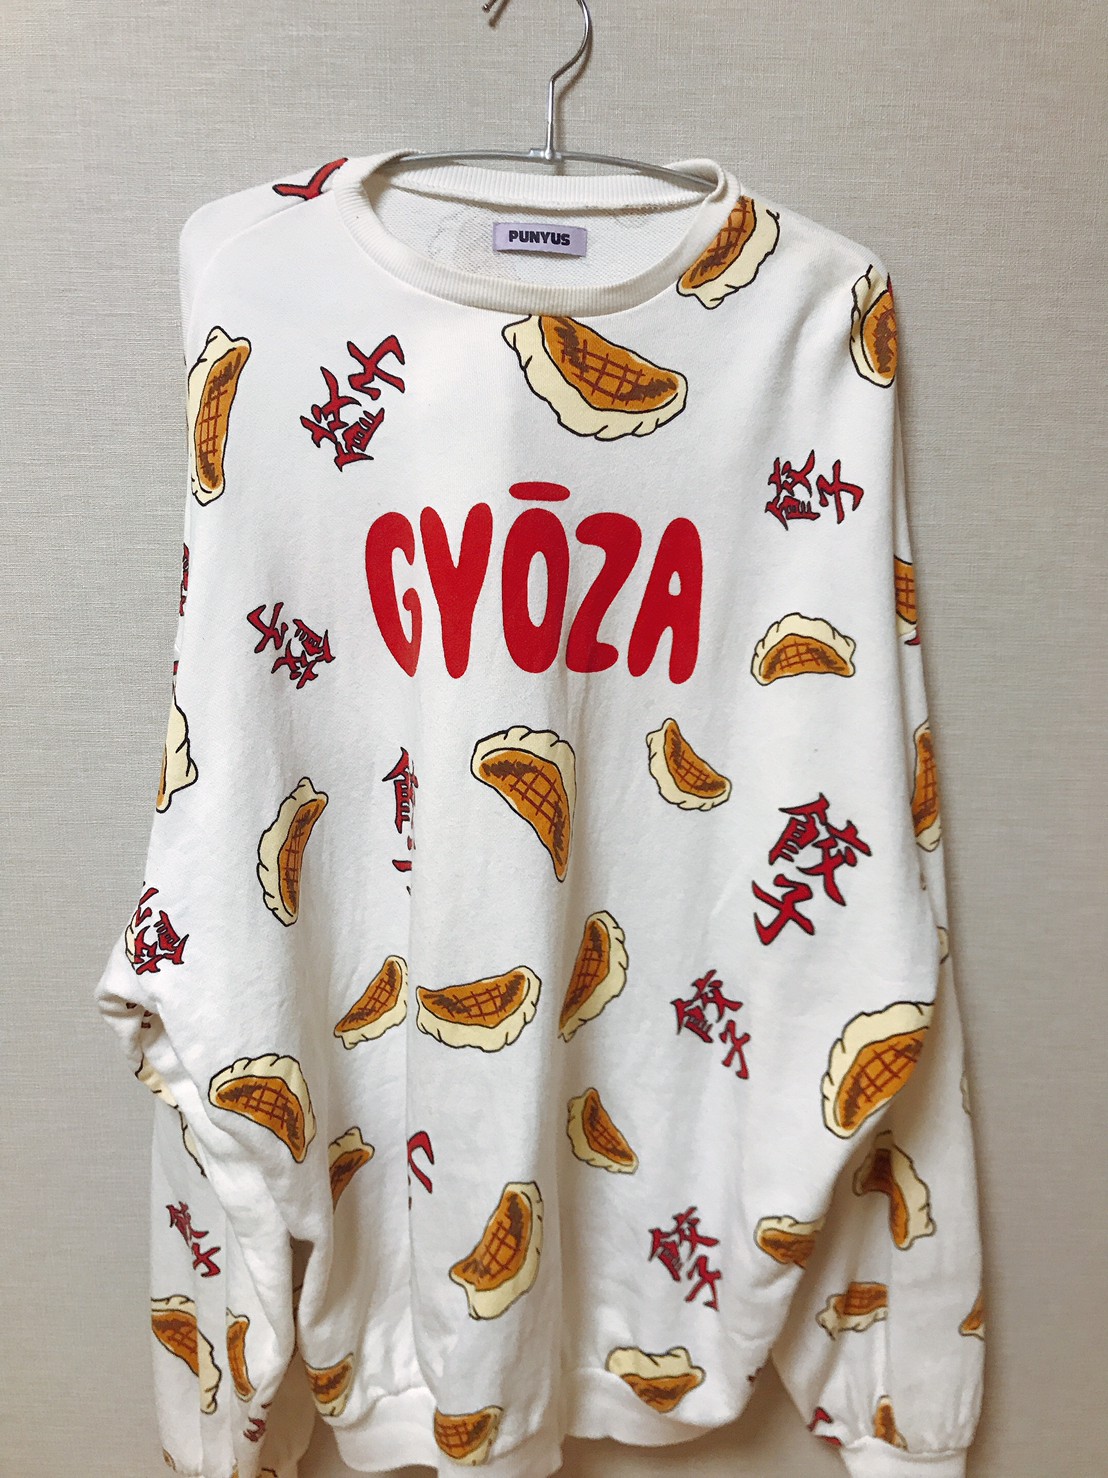 渡辺直美さんのブランド「PUNYUS」の、ぎょうざ柄Tシャツがアツイ。